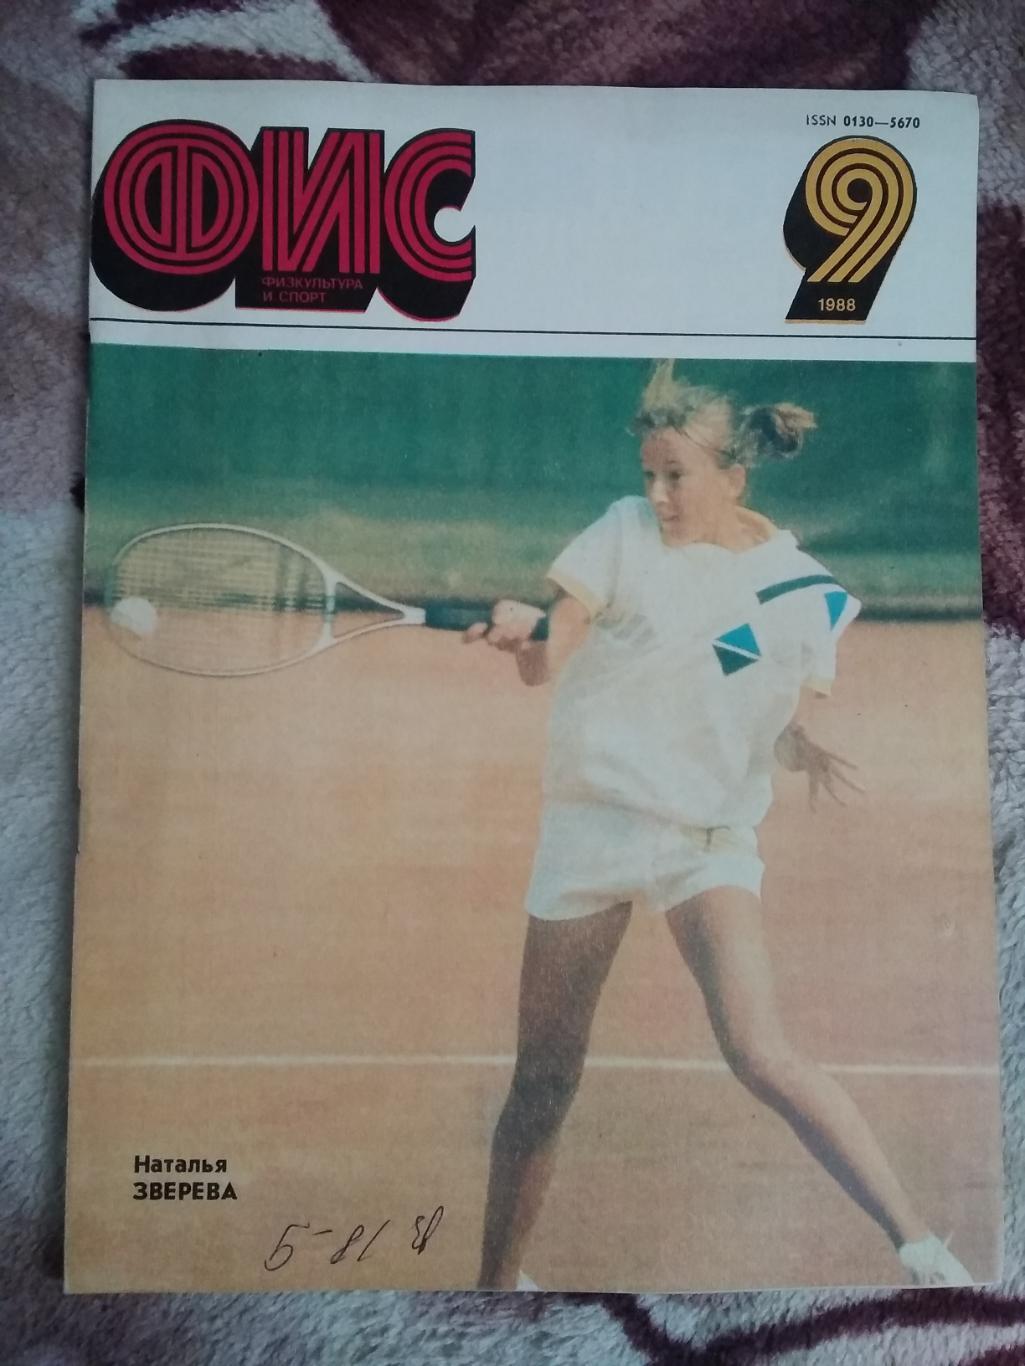 Журнал.Физкультура и спорт № 9 1988 г. (ФиС).